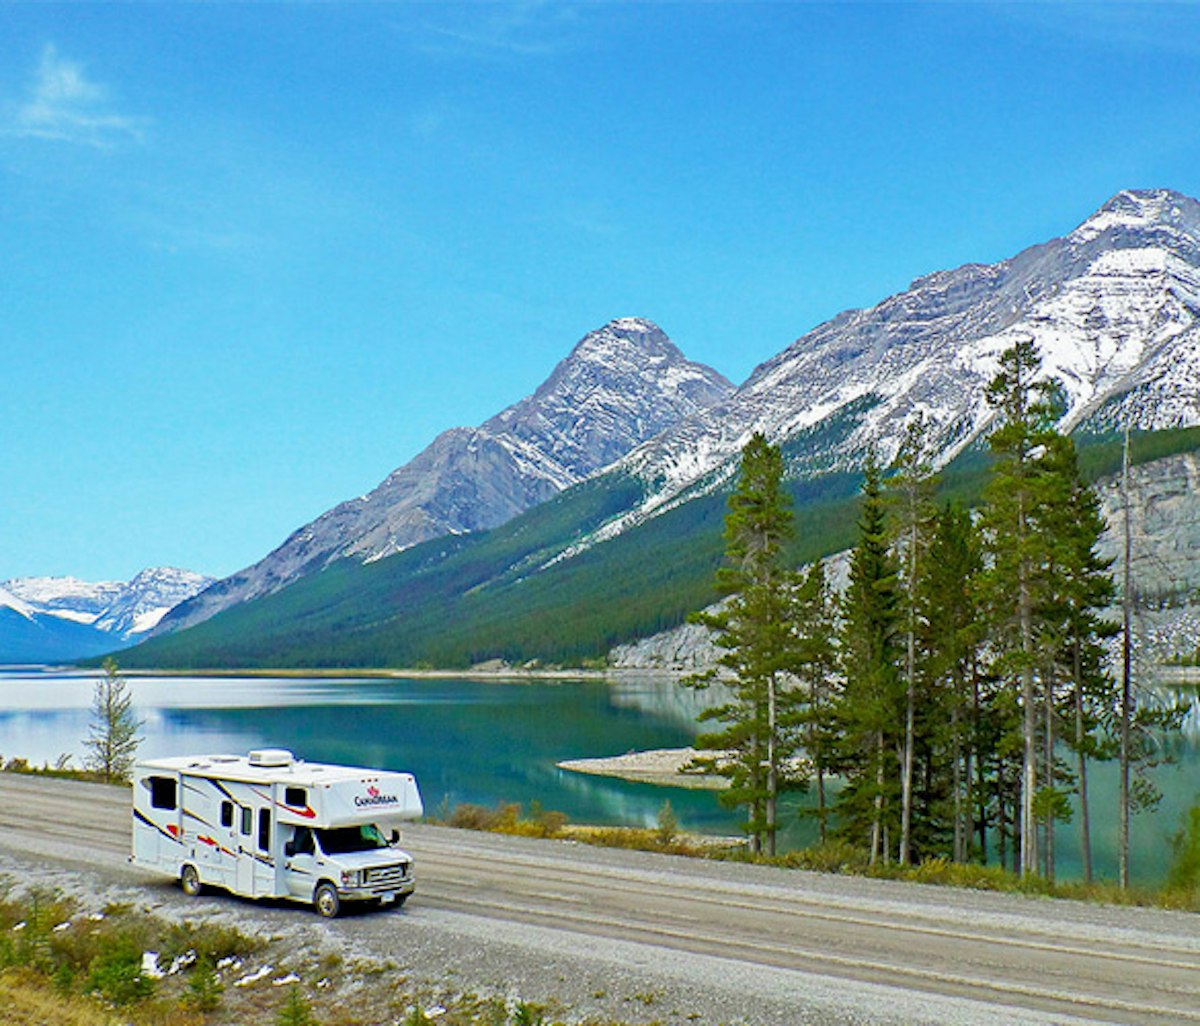 A motorhome traveling alongside a mountainous lake landscape.